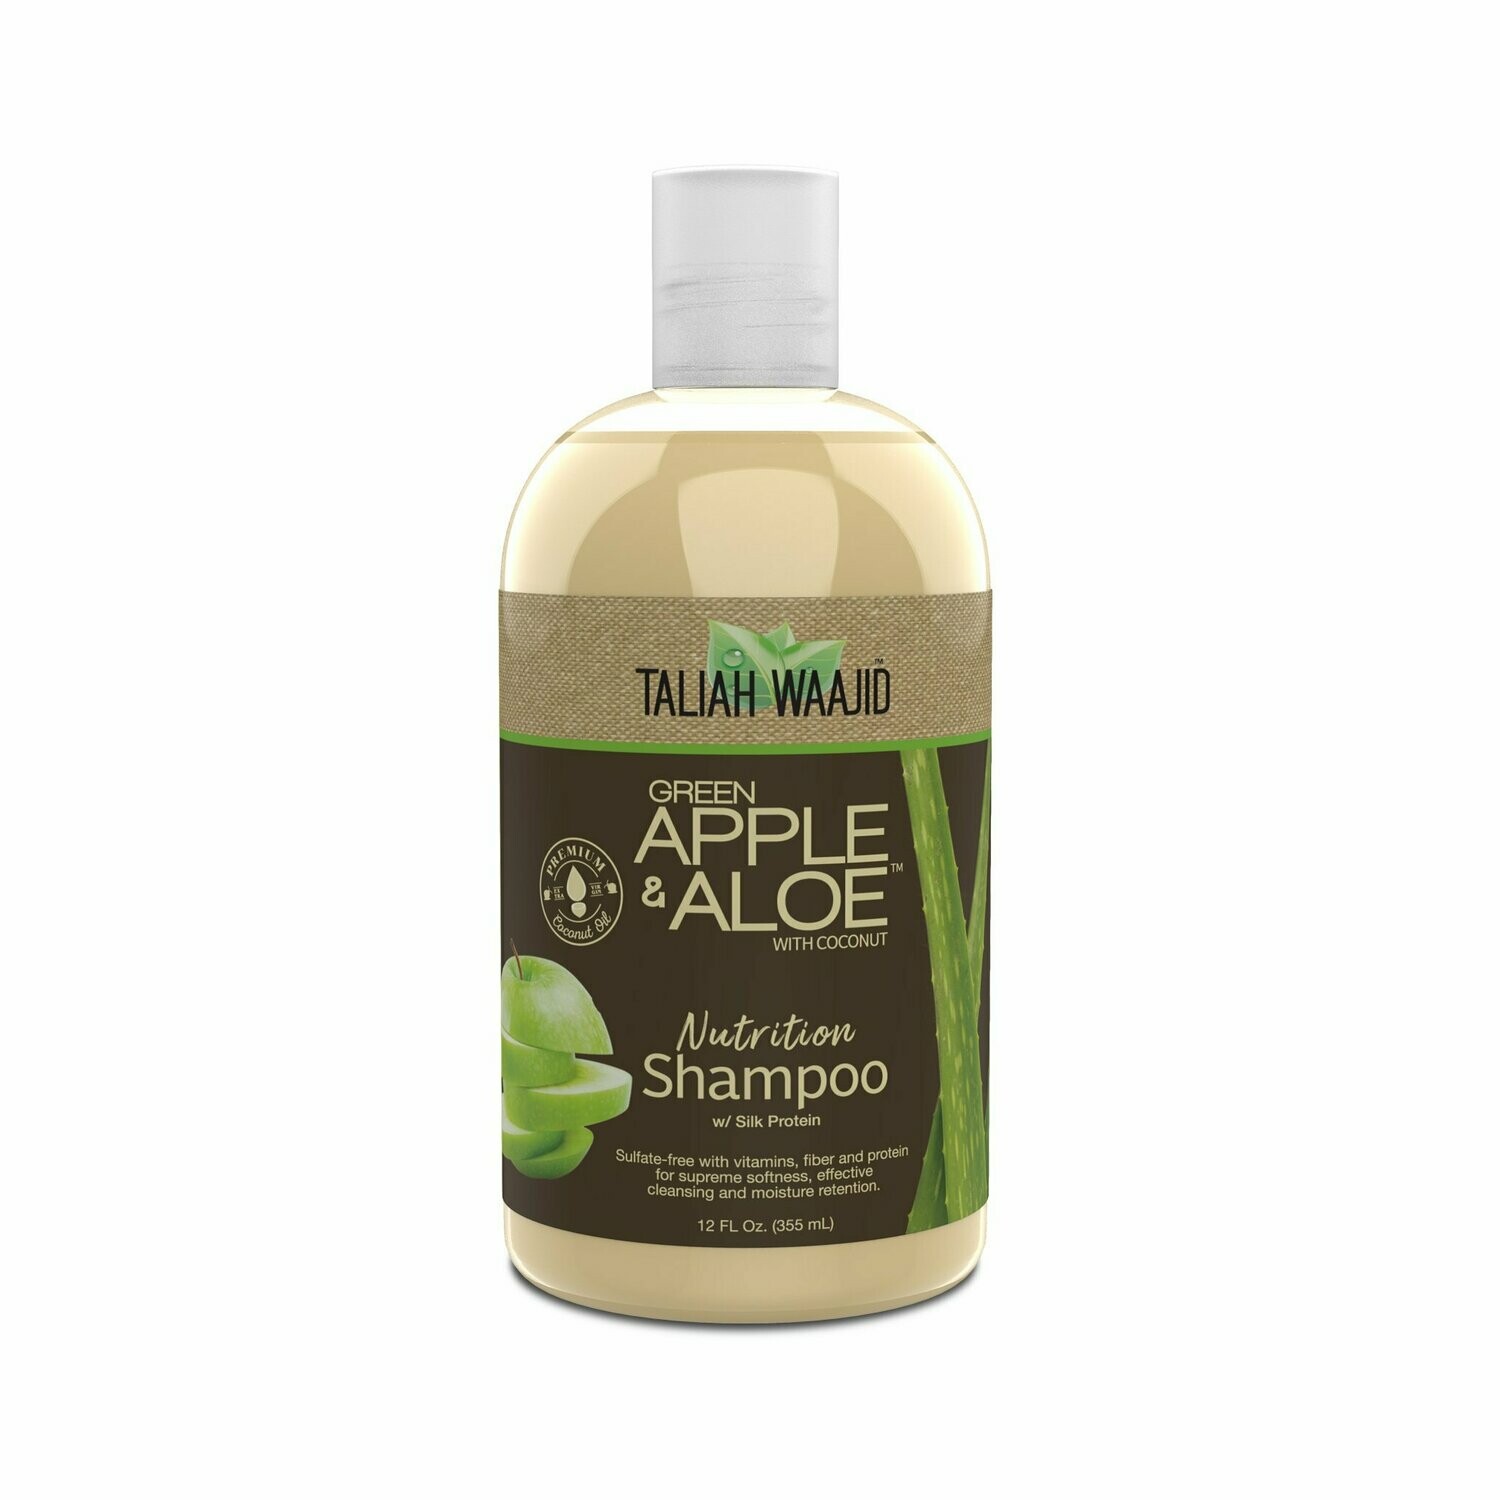 Taliah Waajid Green Apple & Aloe Nutrition Shampoo: $11.99